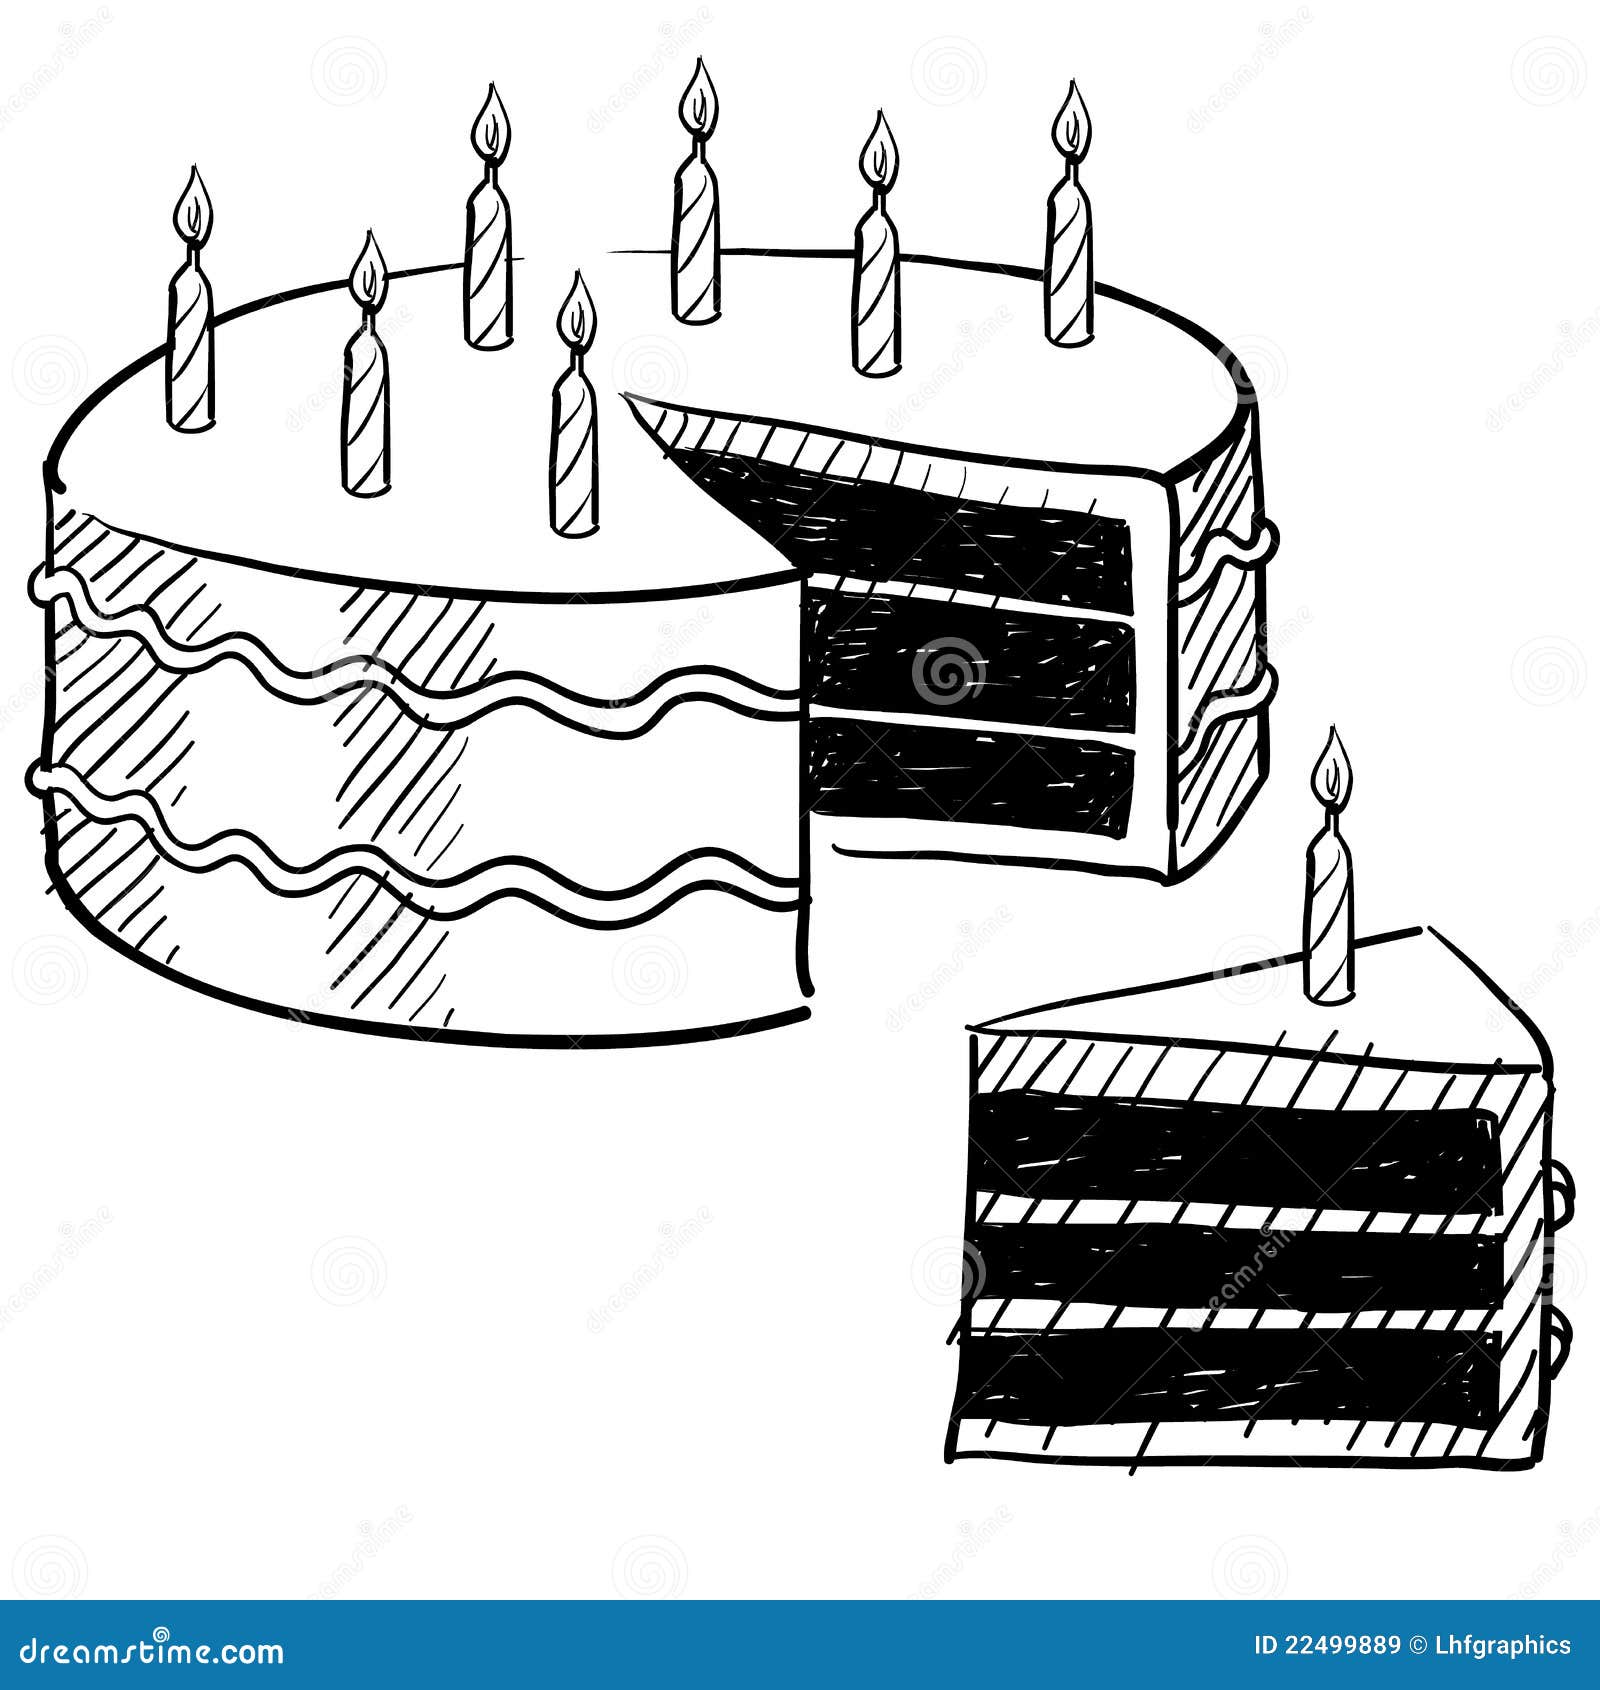 Торт разрезанный рисунок. Эскиз праздничного торта. Разрез торта нарисованный. Эскизы торта в разрезе. Торт набросок.